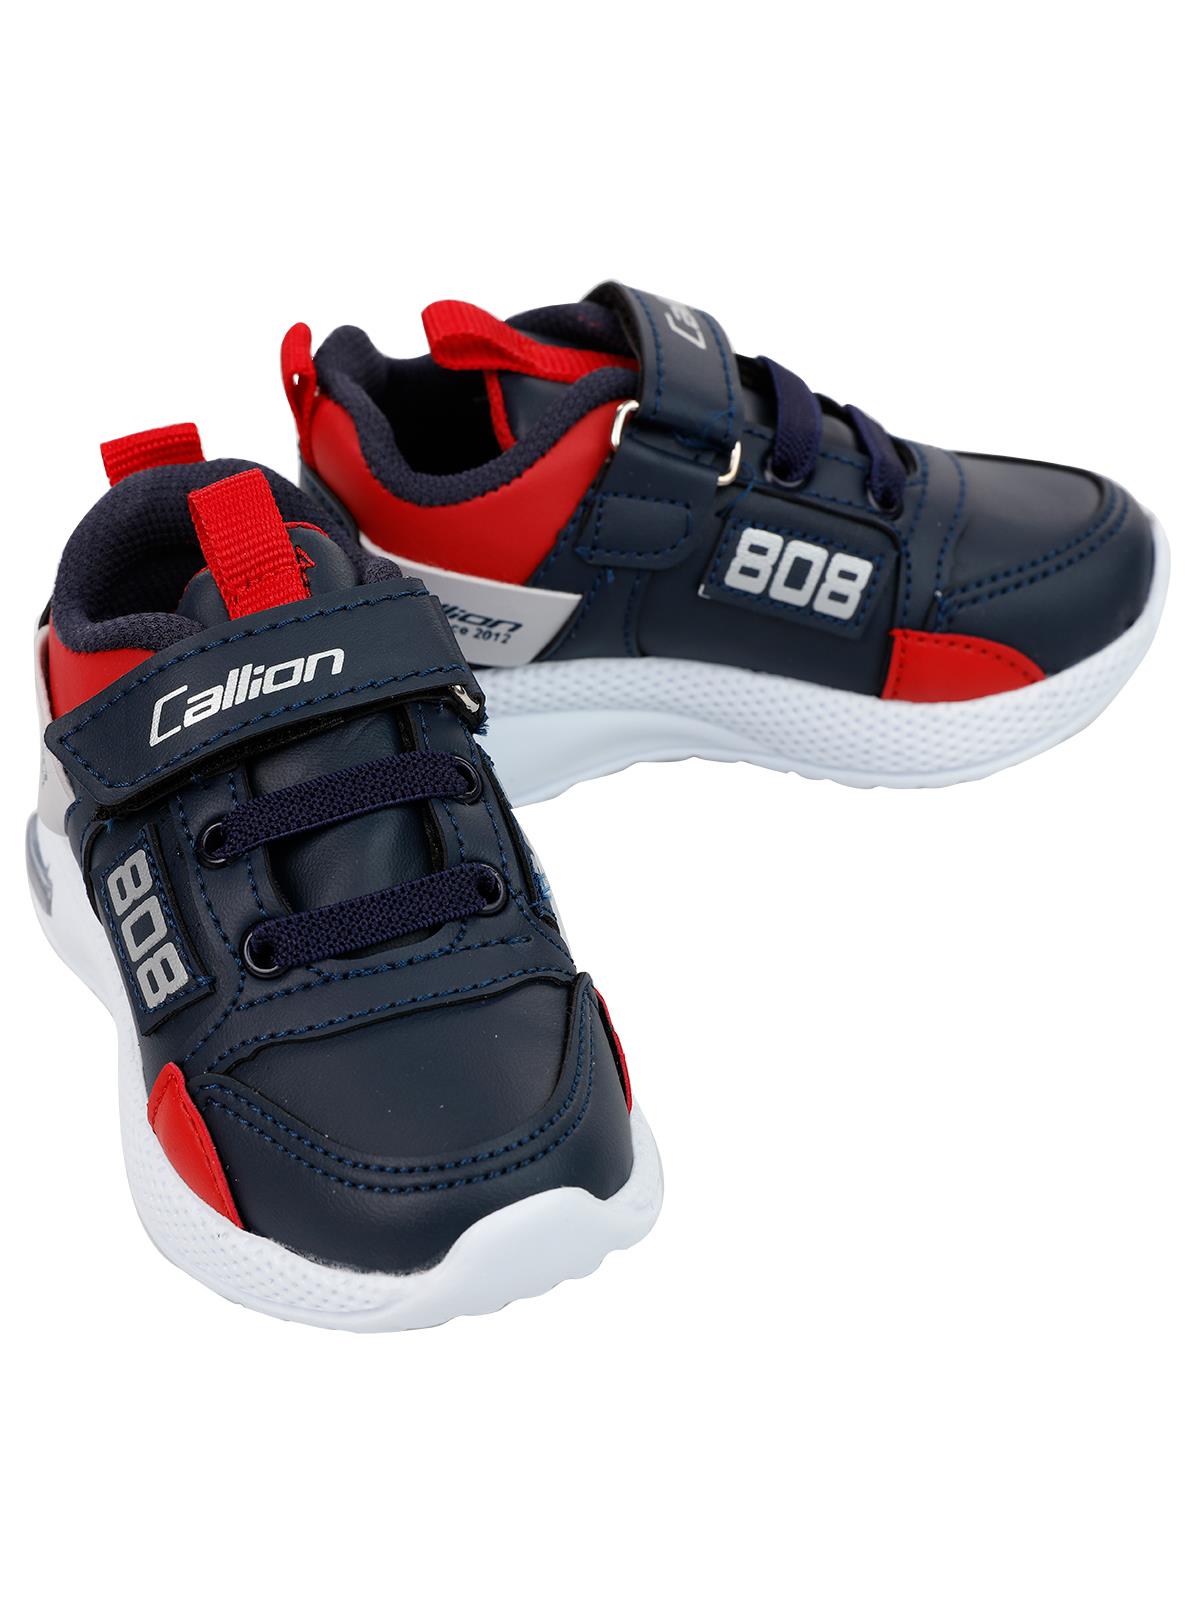 Callion Erkek Çocuk Spor Ayakkabı 22-25 Numara Lacivert-Kırmızı